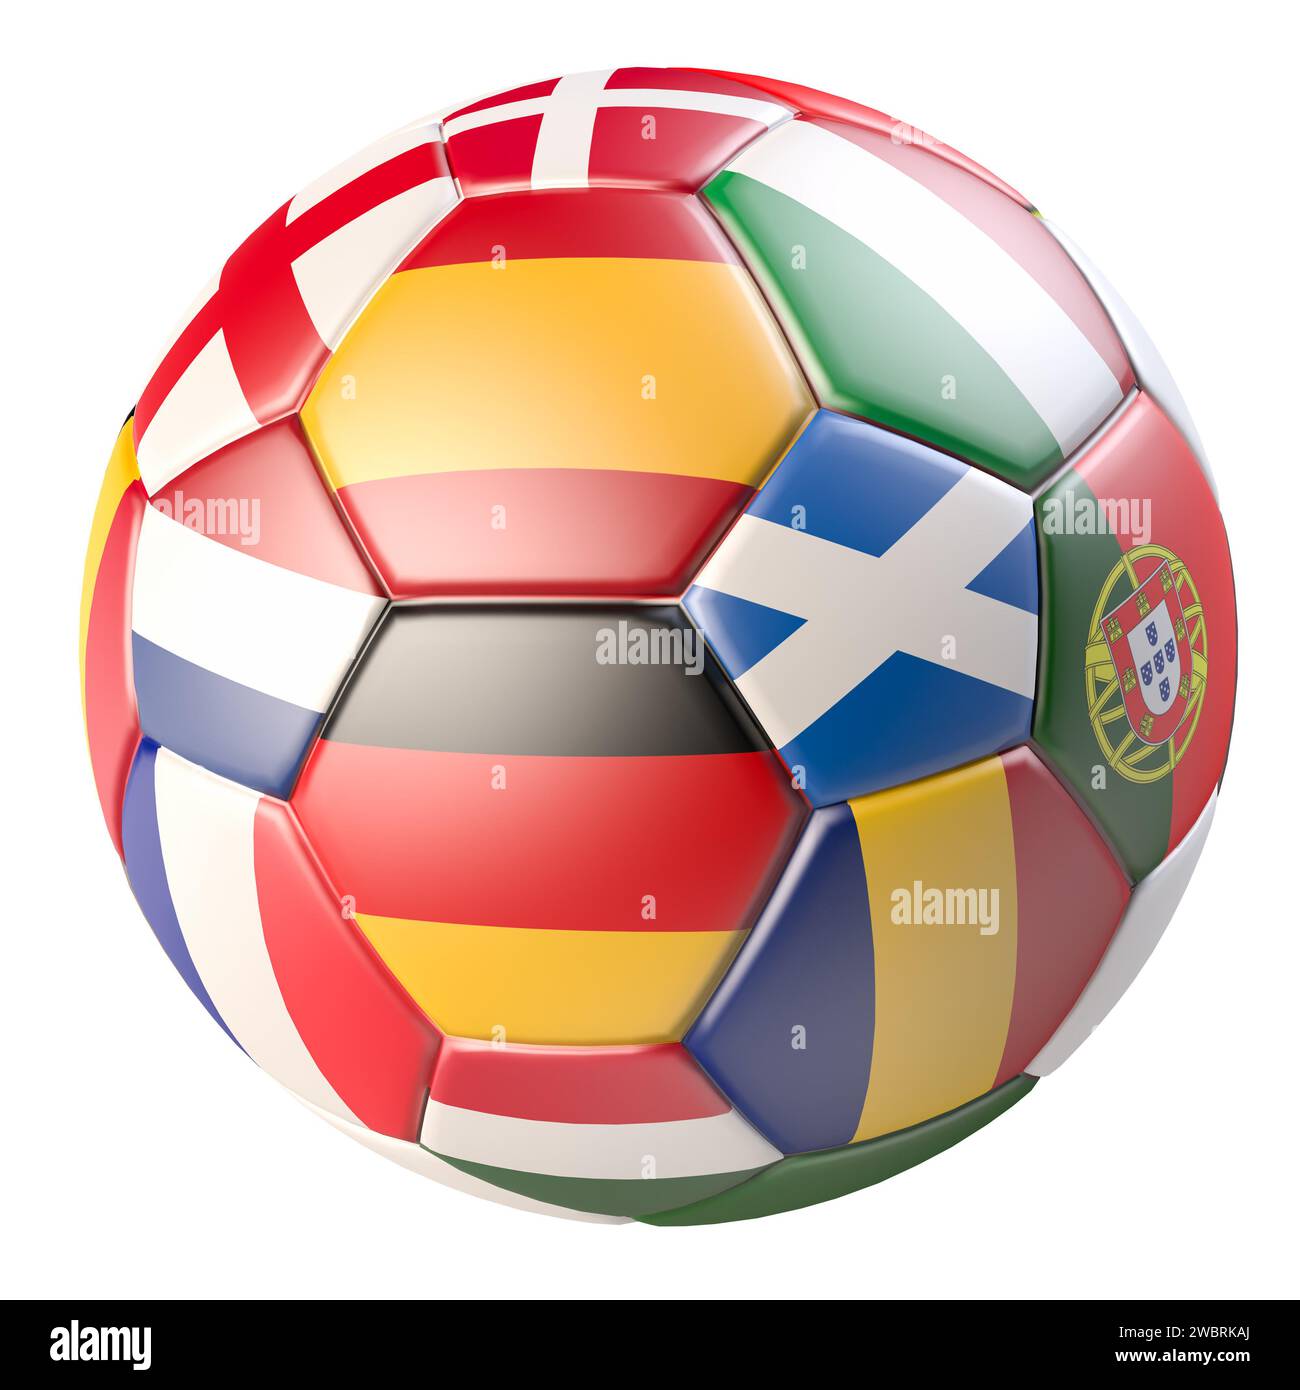 Ballon de football avec les drapeaux de plusieurs des pays qualifiés pour le Championnat d'Europe en 2024 en Allemagne. Isolé sur blanc Banque D'Images